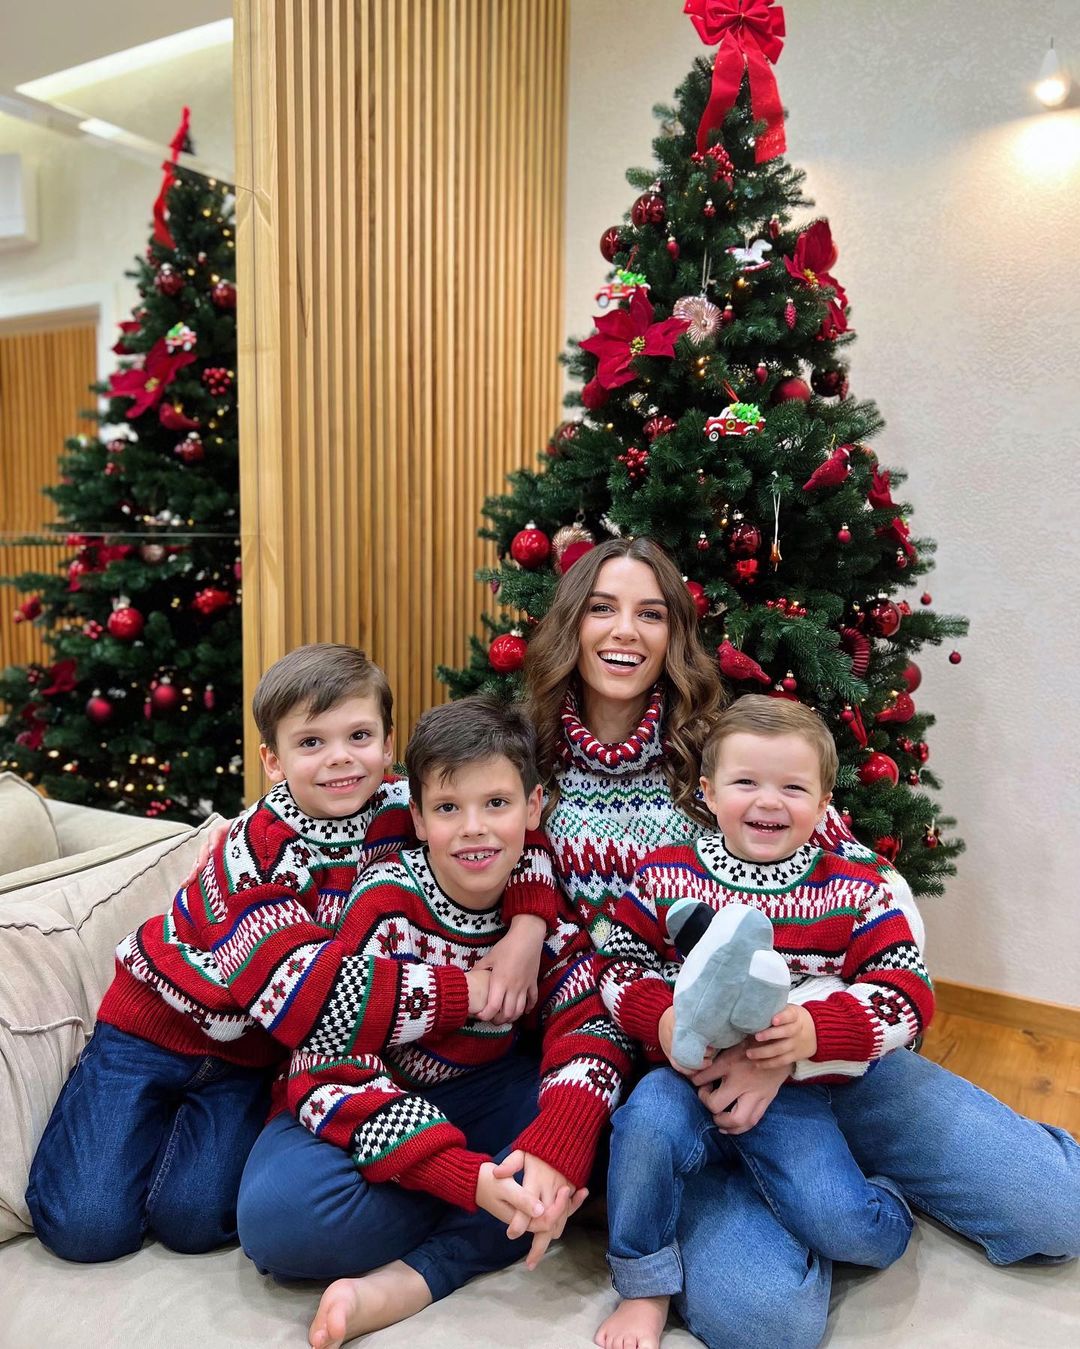 Кристина Решетник приобрела всем одинаковые праздничные свитера – тепло и комфортно. Фото: Instagram.com/kristina_reshetnik/